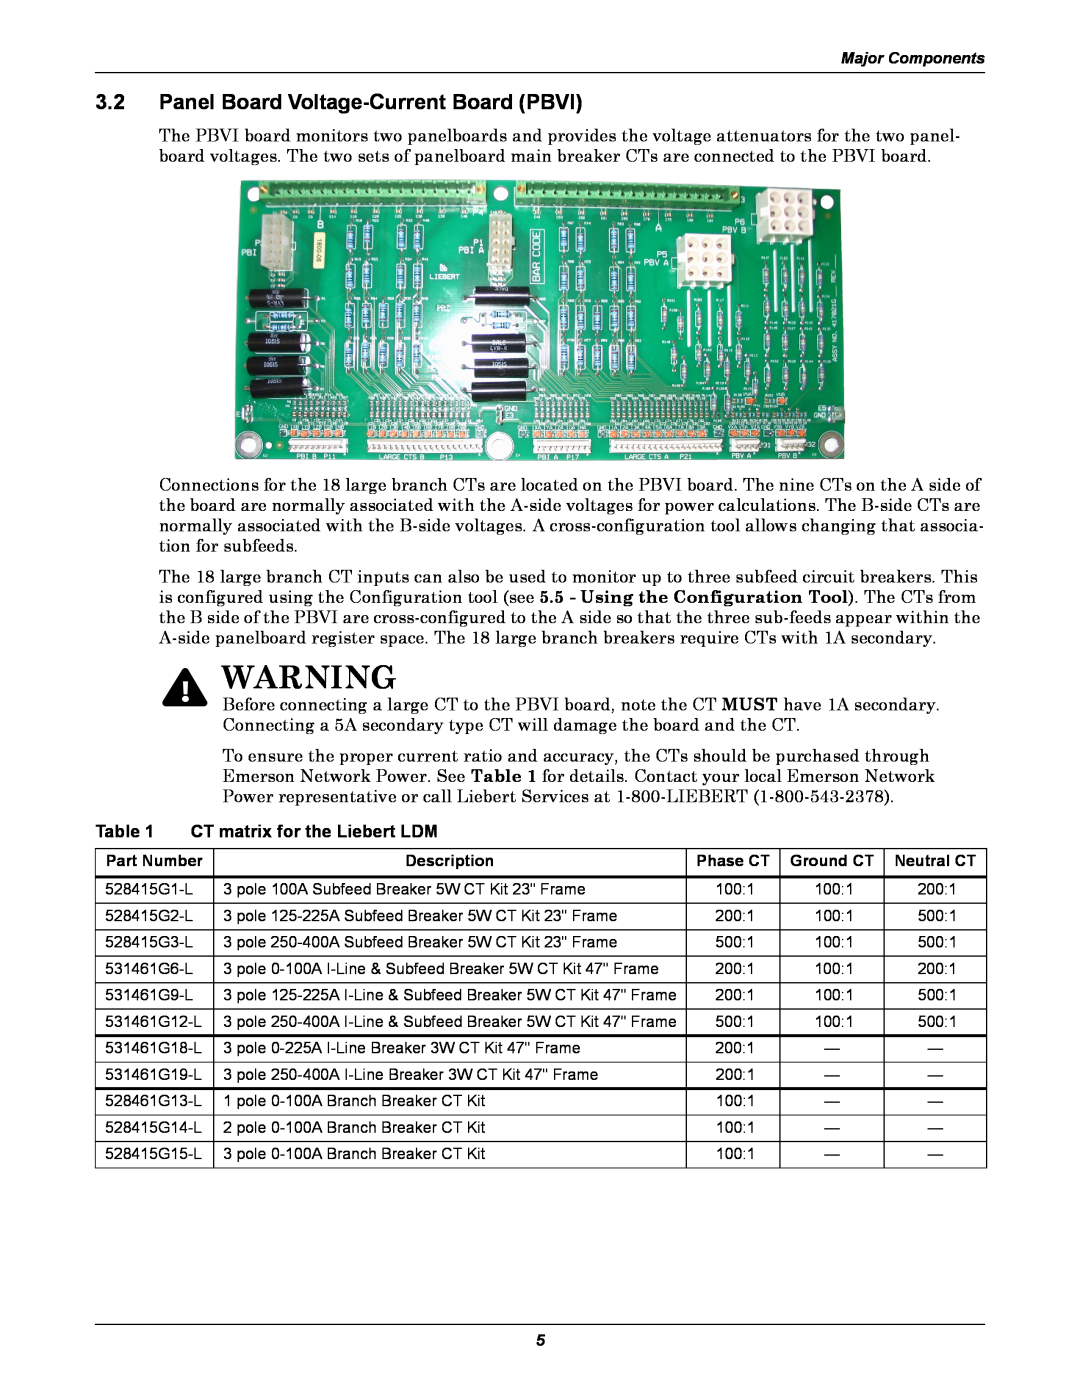 Liebert user manual Panel Board Voltage-Current Board PBVI, CT matrix for the Liebert LDM 